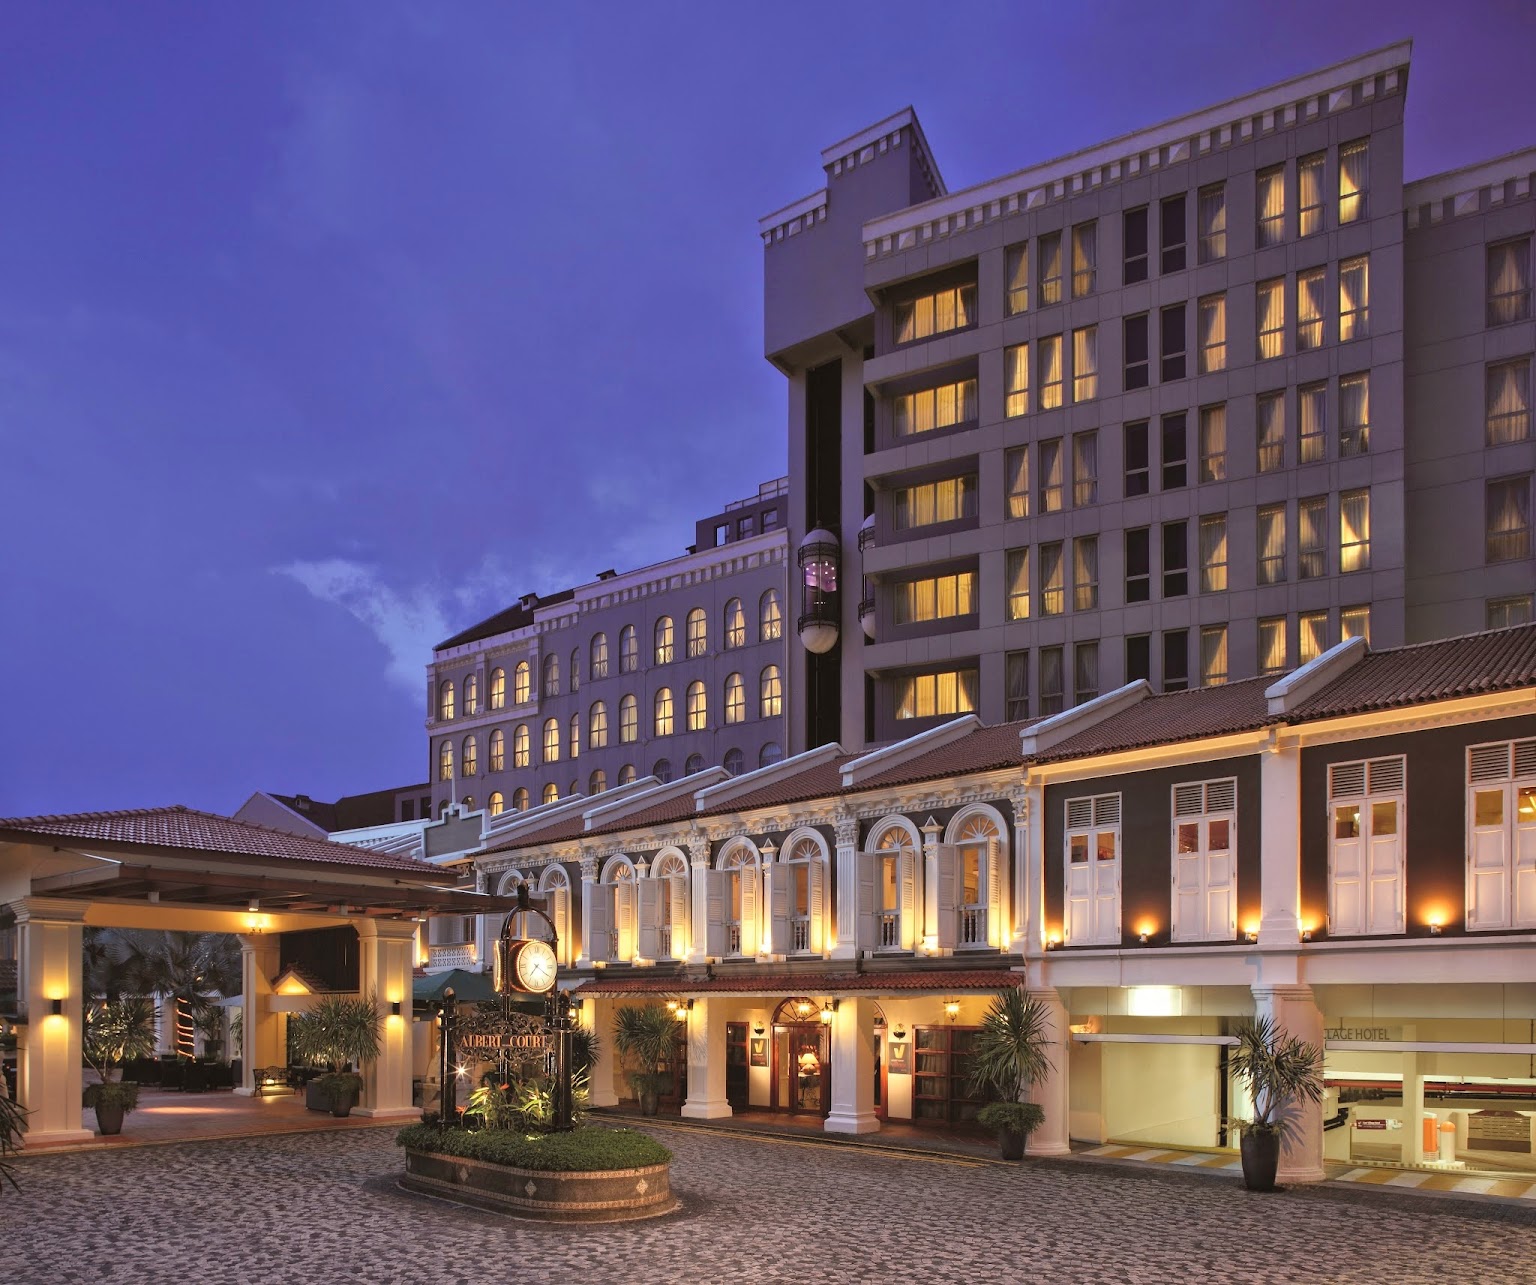 Village Hotel Albert Court Hotel Singapore